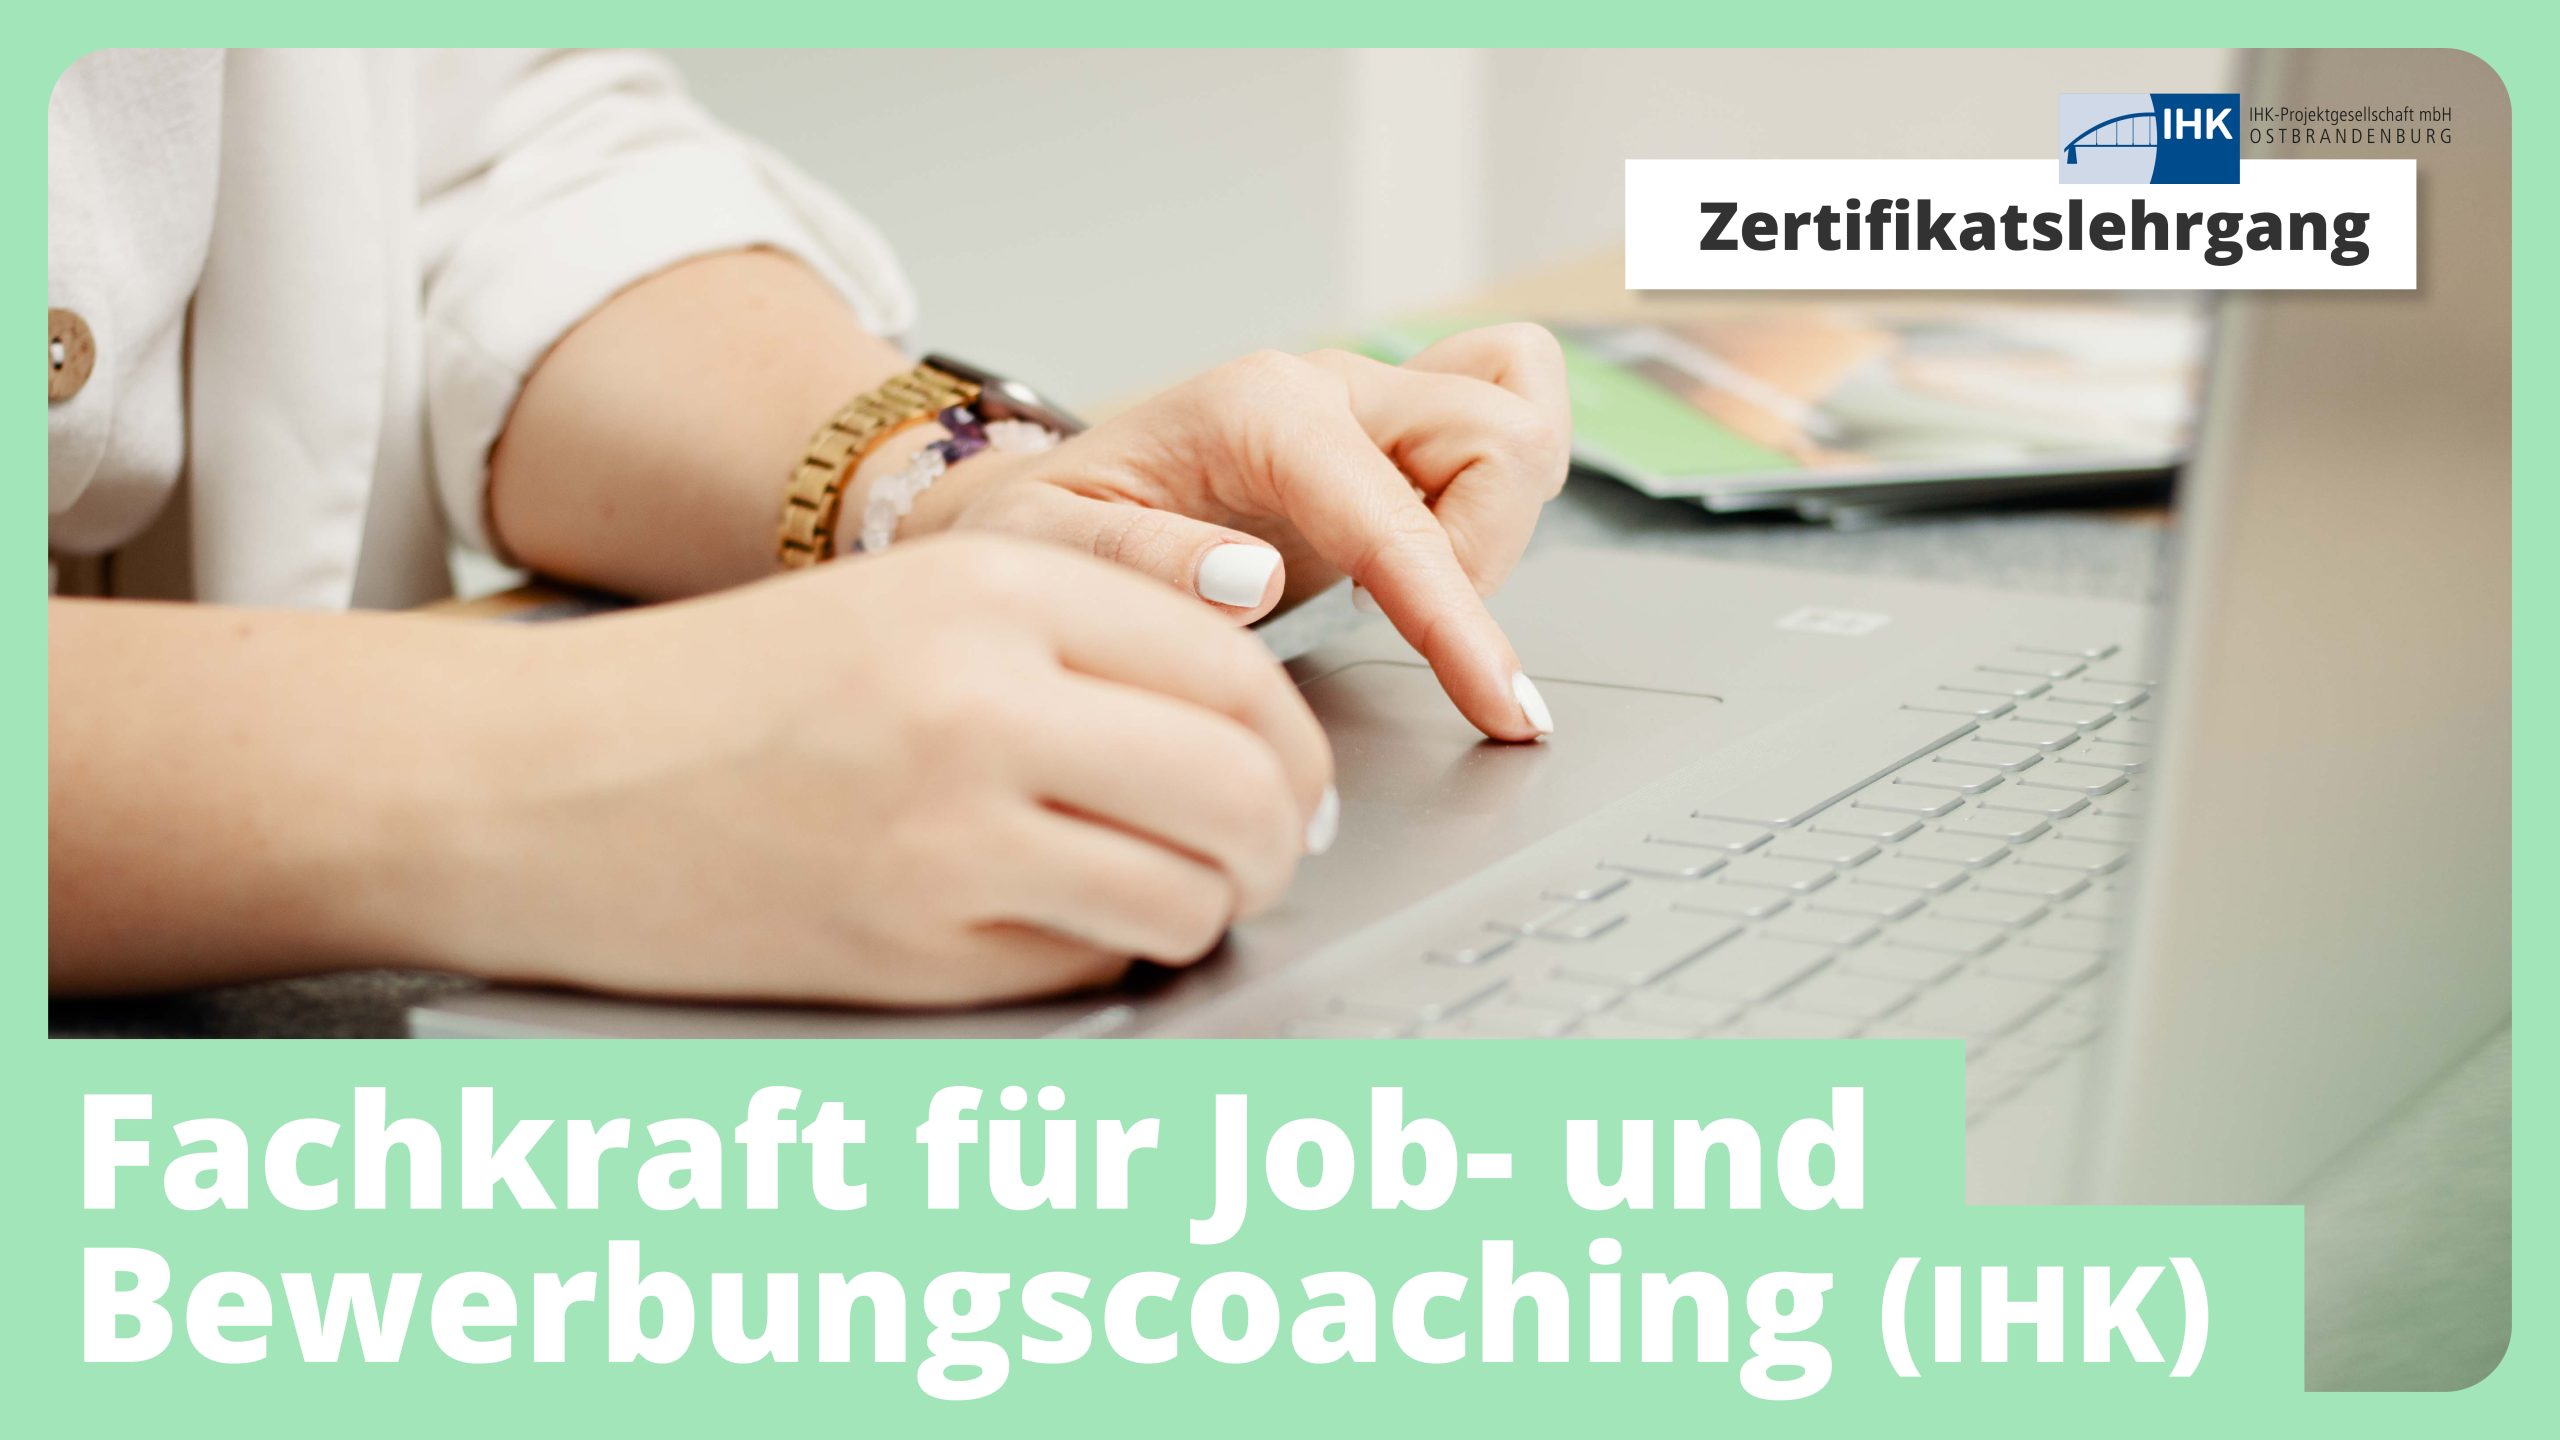 Zertifikatslehrgang: Fachkraft für Job- und Bewerbungscoaching (IHK)